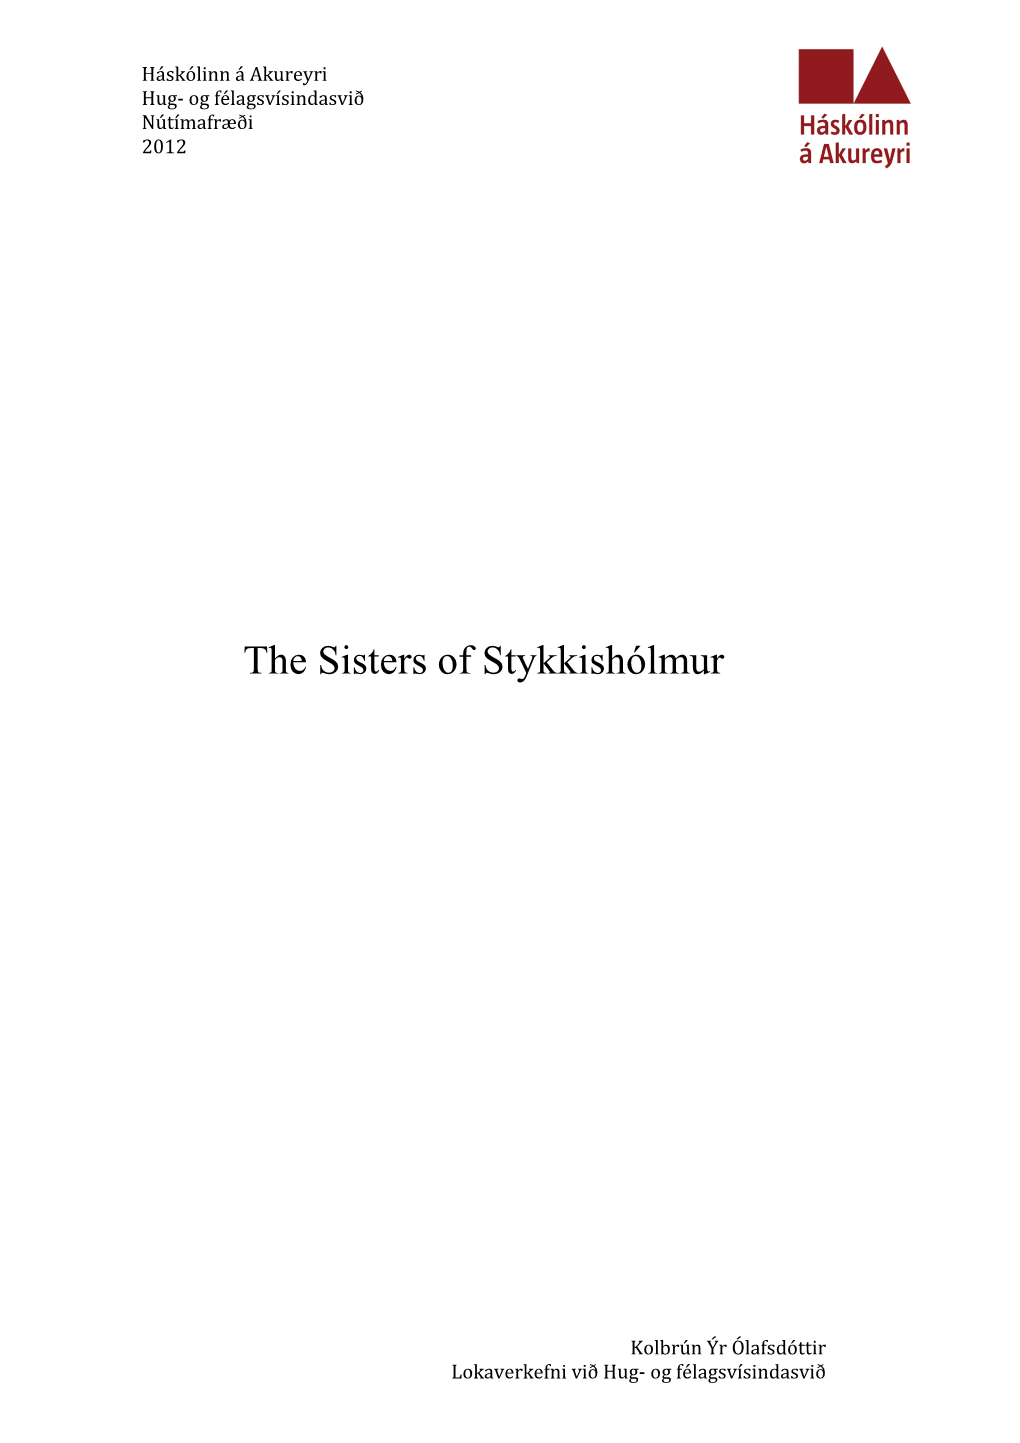 The Sisters of Stykkishólmur